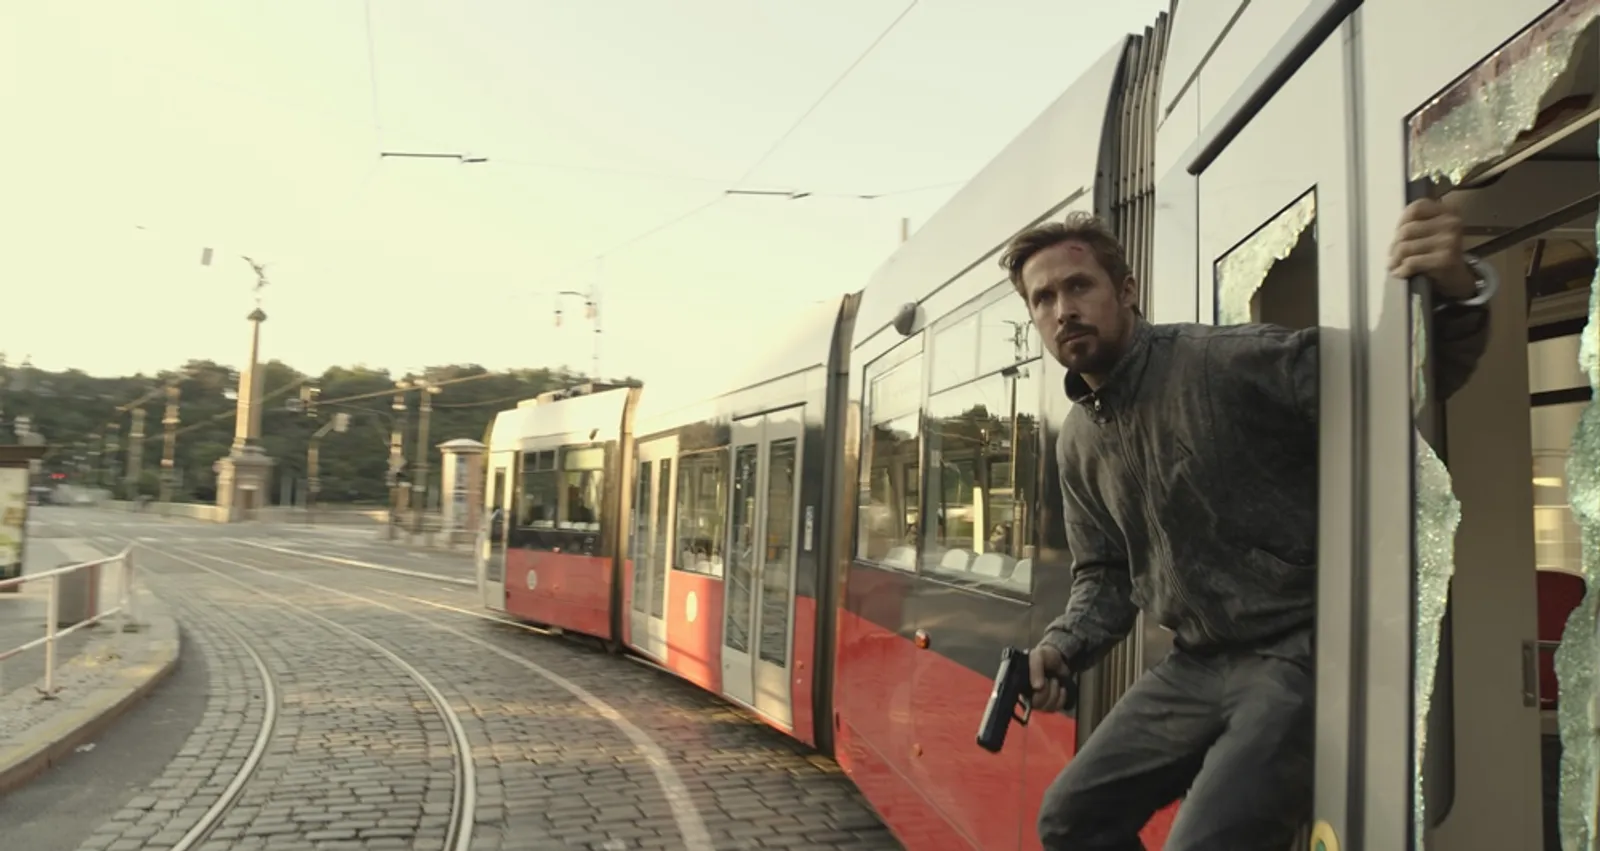 Deretan Fakta tentang 'The Gray Man', Film Terbaru dari Netflix